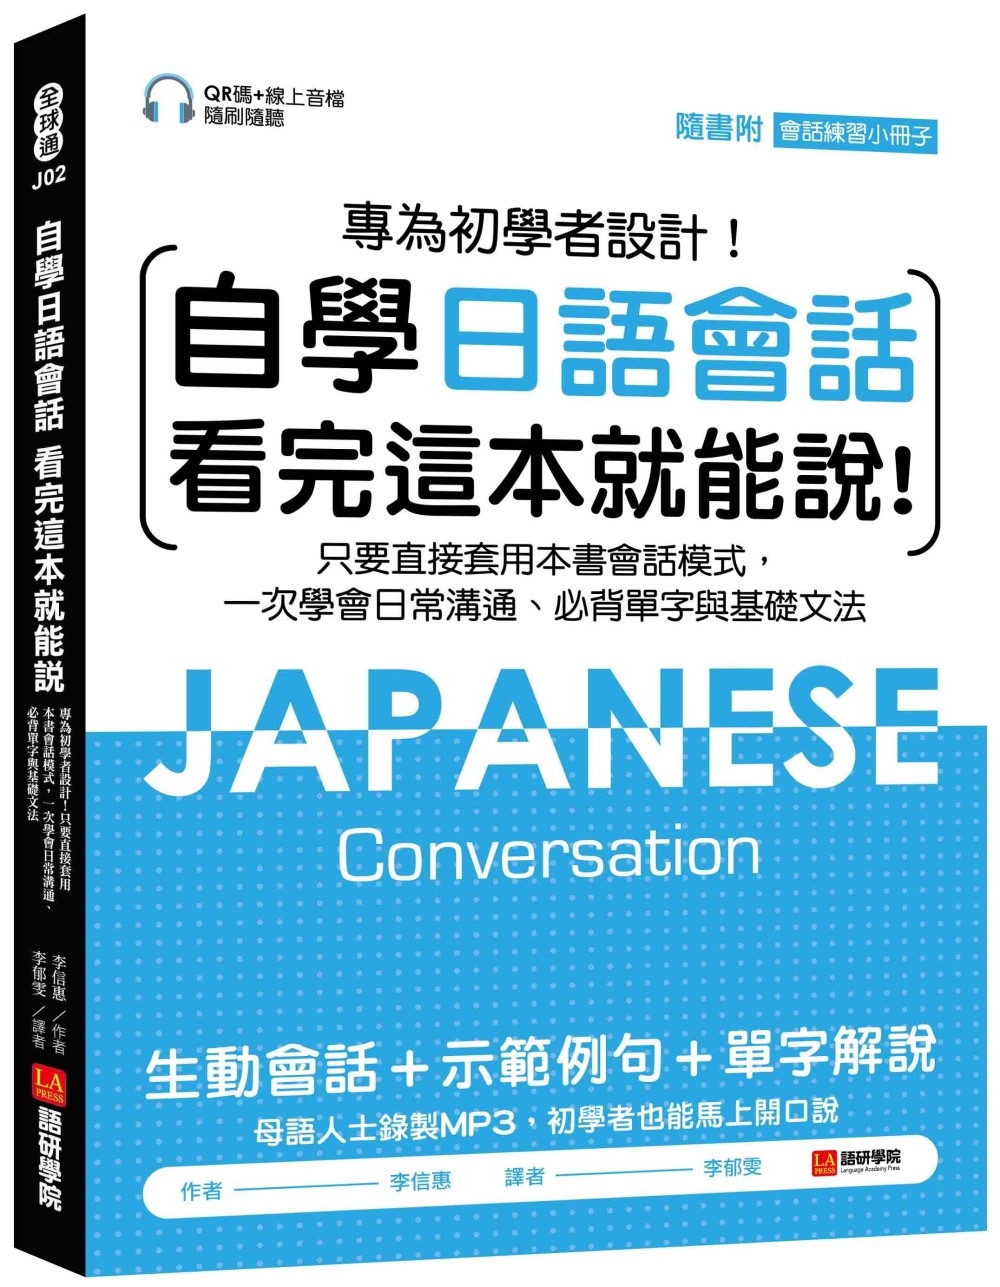 自學日語會話 看完這本就能說：專為初學者設計！只要直接套用本書會話模式，一次學會日常溝通、必背單字與基礎文法（附QR線碼上音檔隨刷隨聽 + 隨身會話練習小冊子）